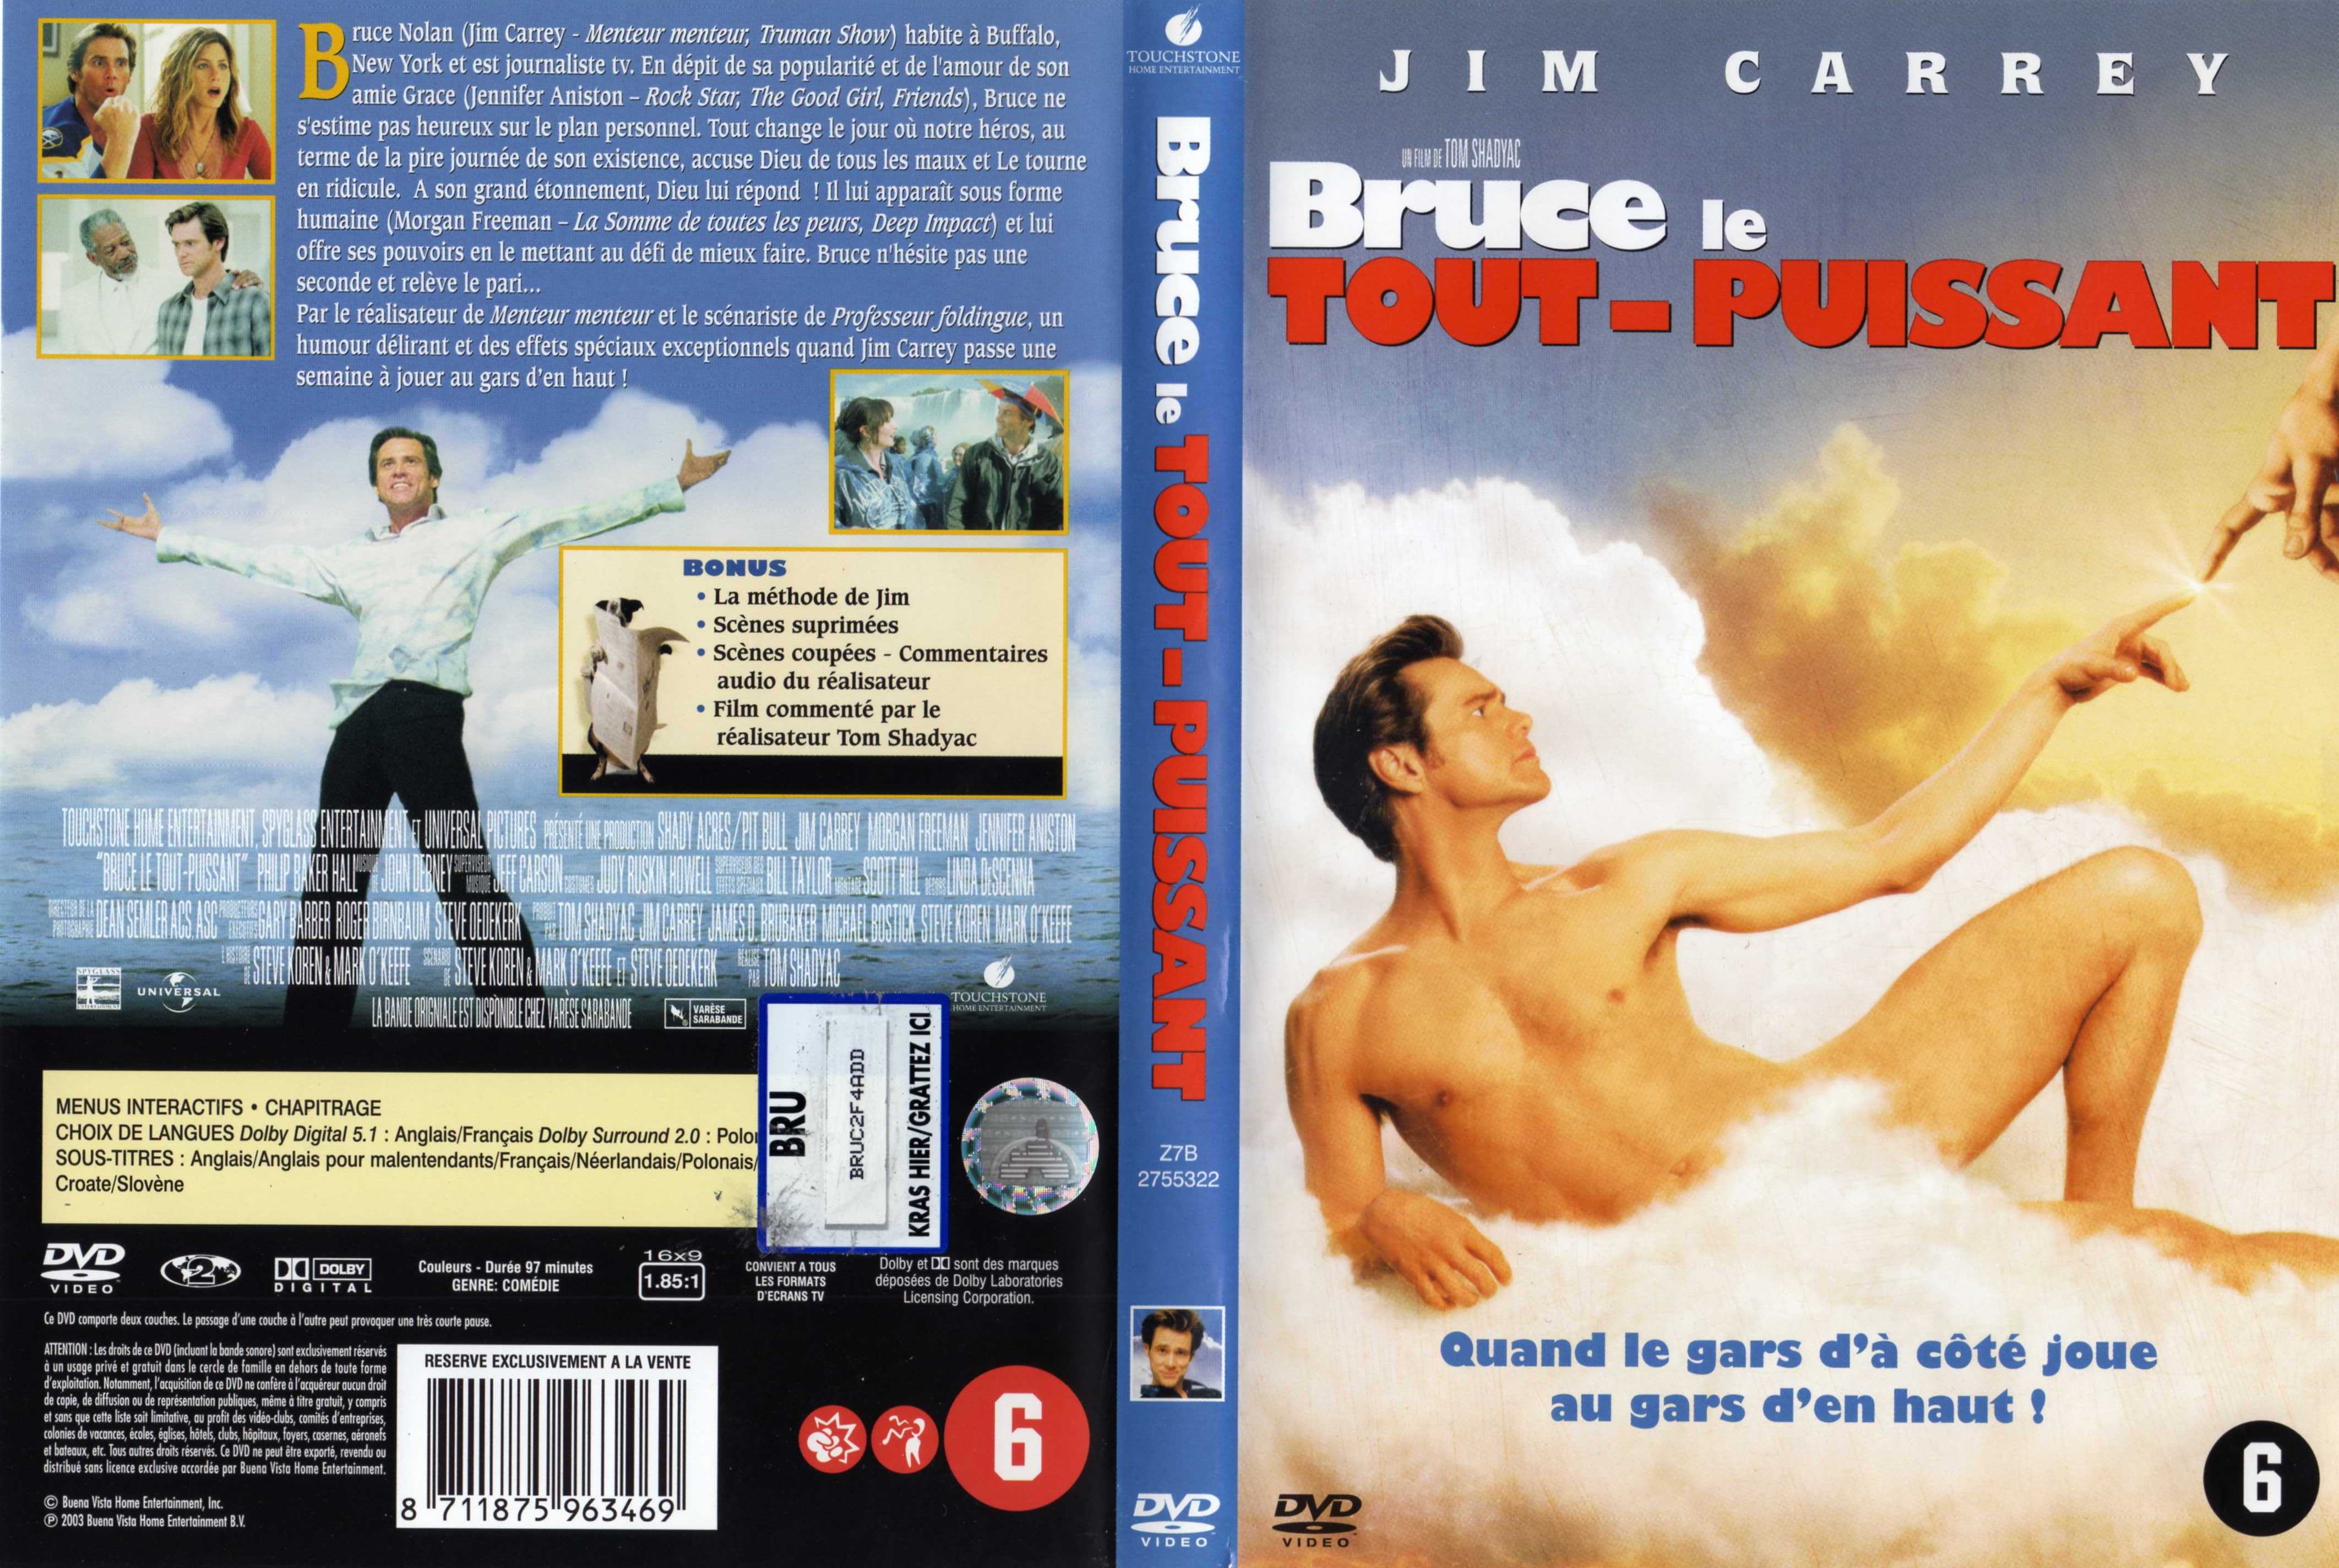 Jaquette DVD Bruce le tout puissant